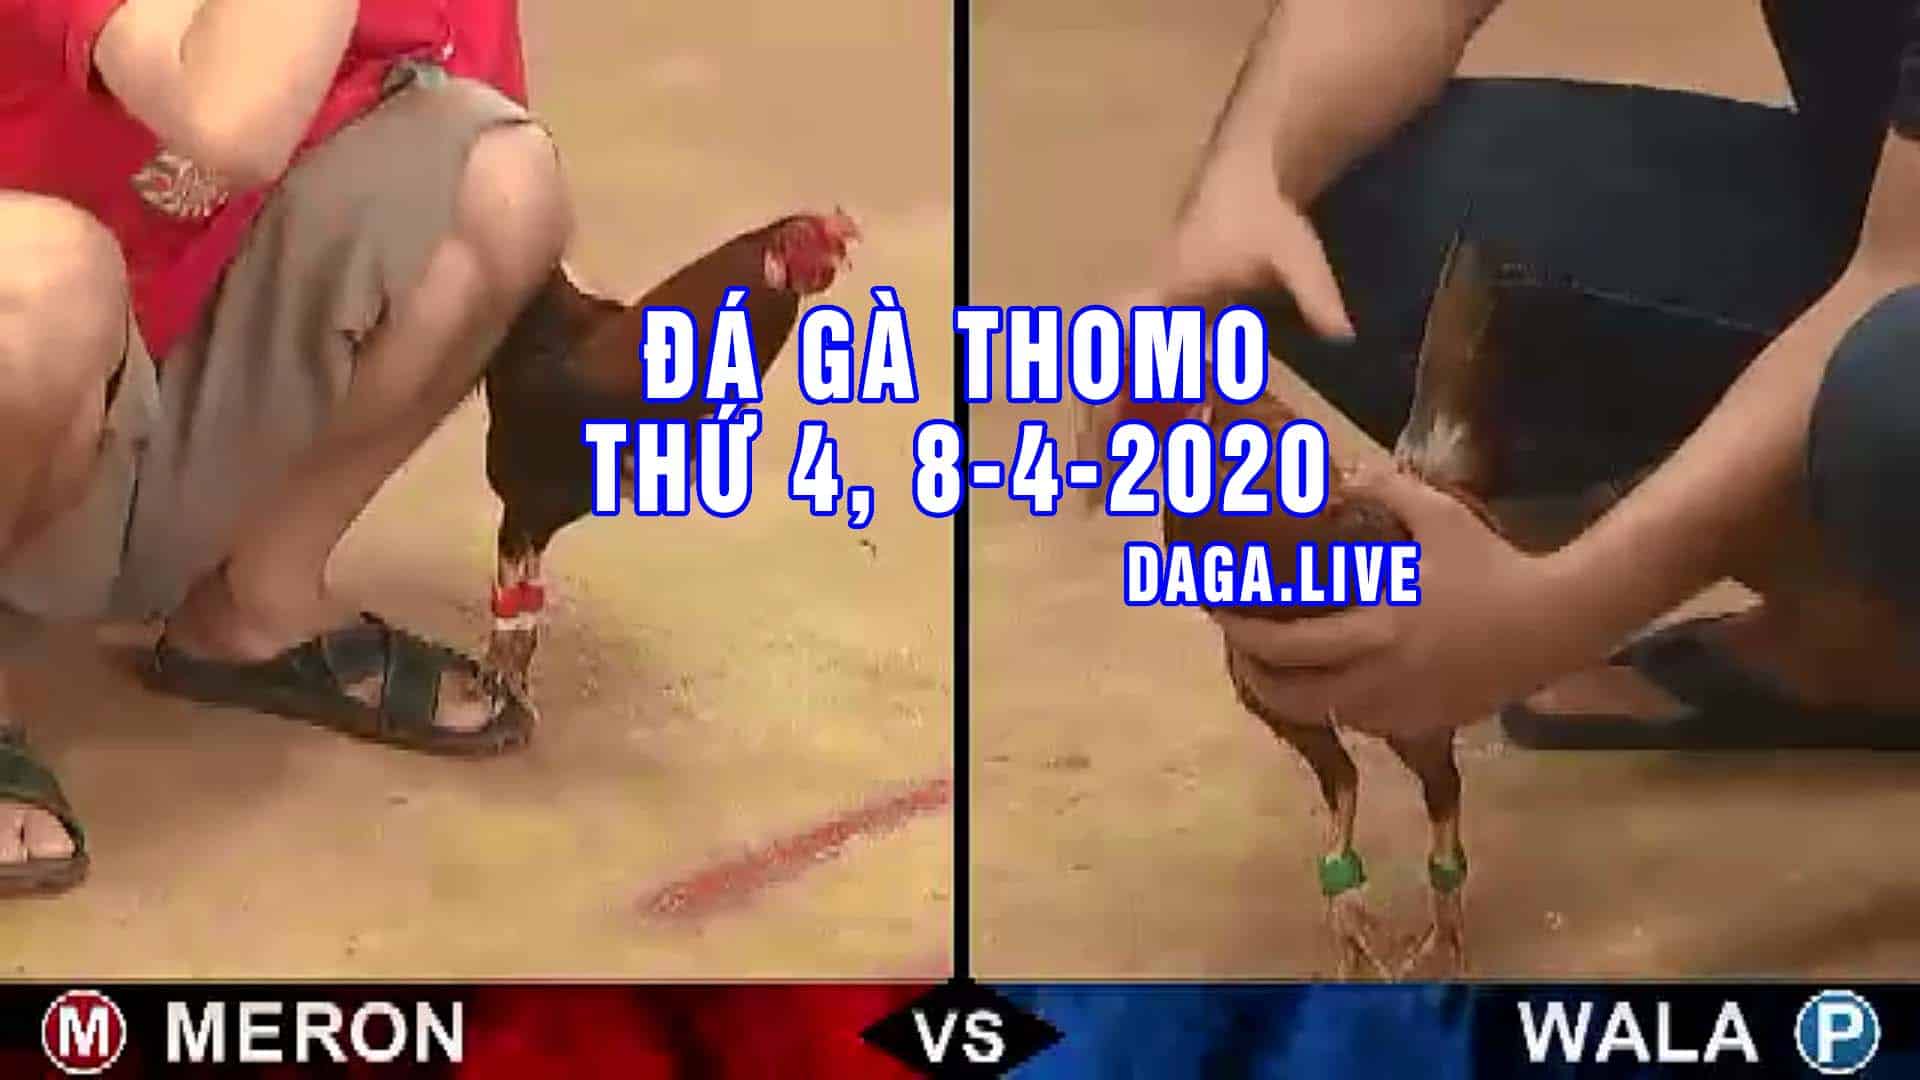 DAGA.LIVE - Đá gà trực tiếp thomo hôm nay, đá gà thomo, đá gà campuchia thứ 4 ngày 8-4-2020